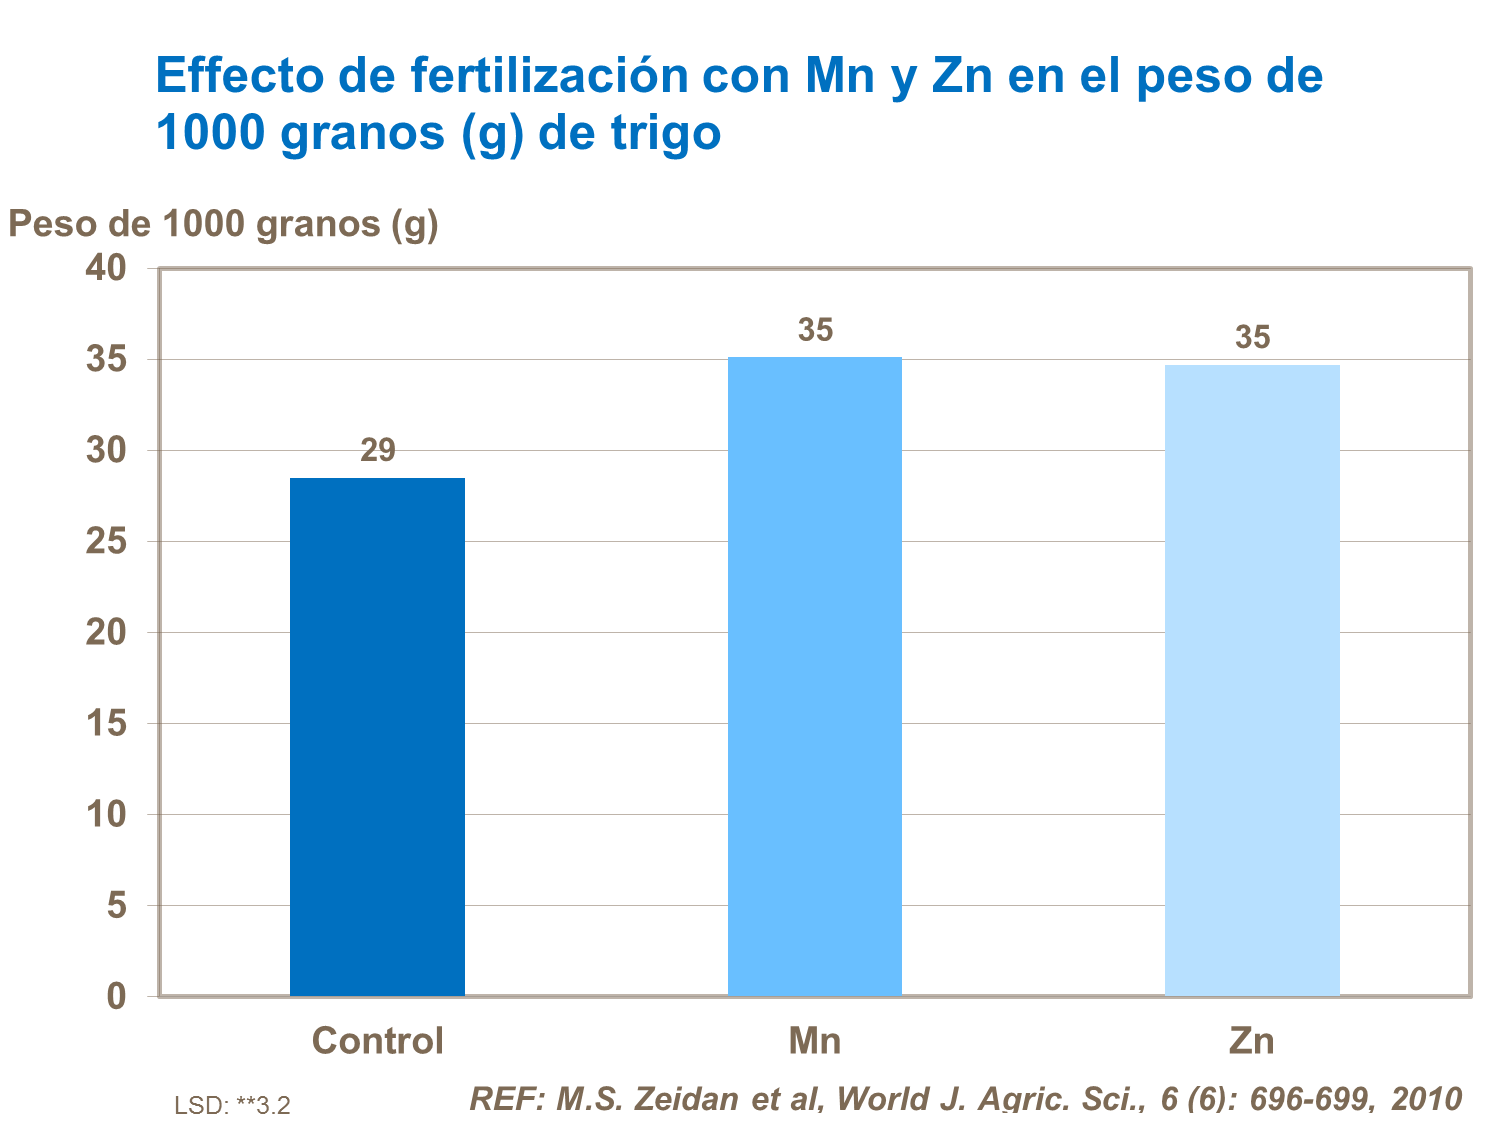 Effecto de fertilización con Mn y Zn en el peso de 1000 granos (g) de trigo